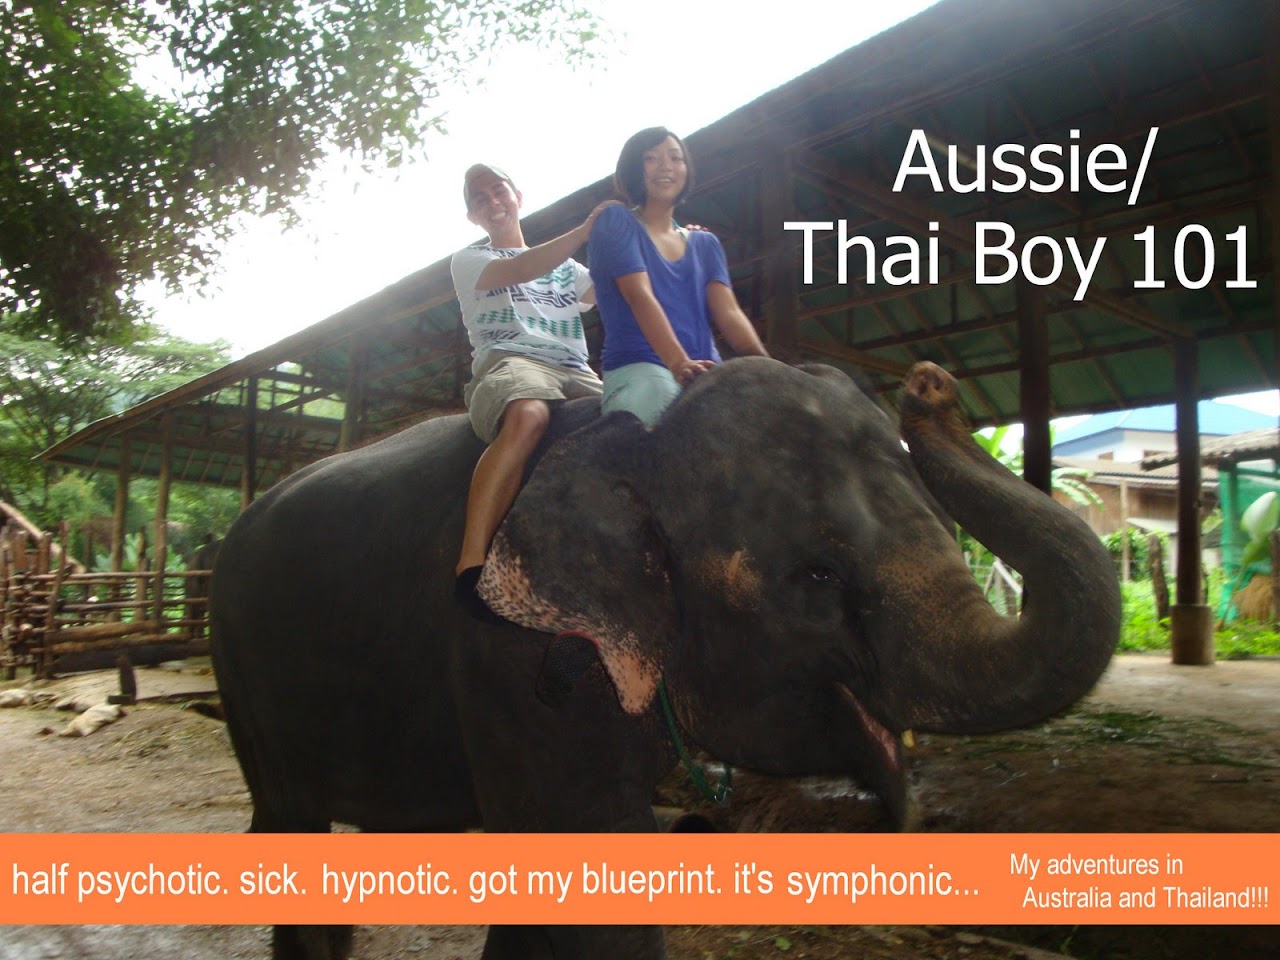 Aussie/Thai Boy 101